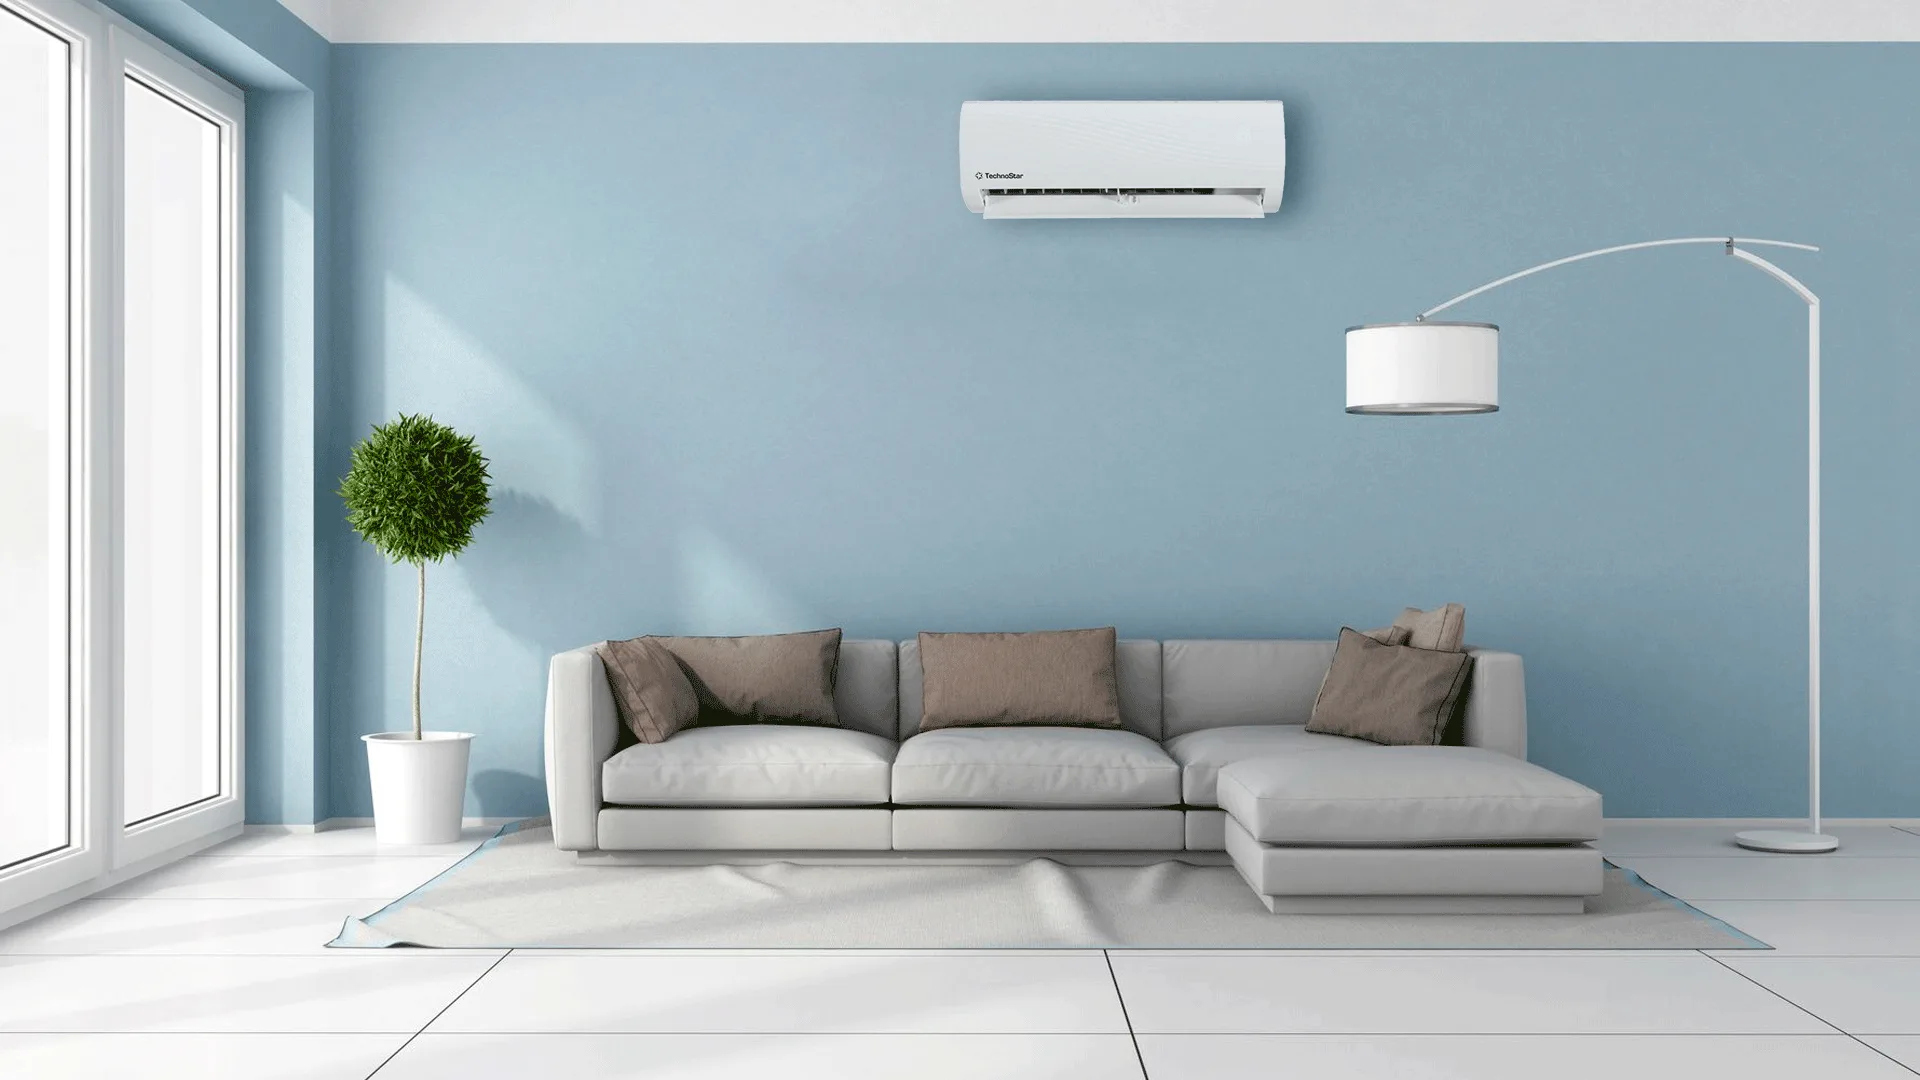 Aire acondicionado de pared: ¿Cómo elegirlo e instalarlo?